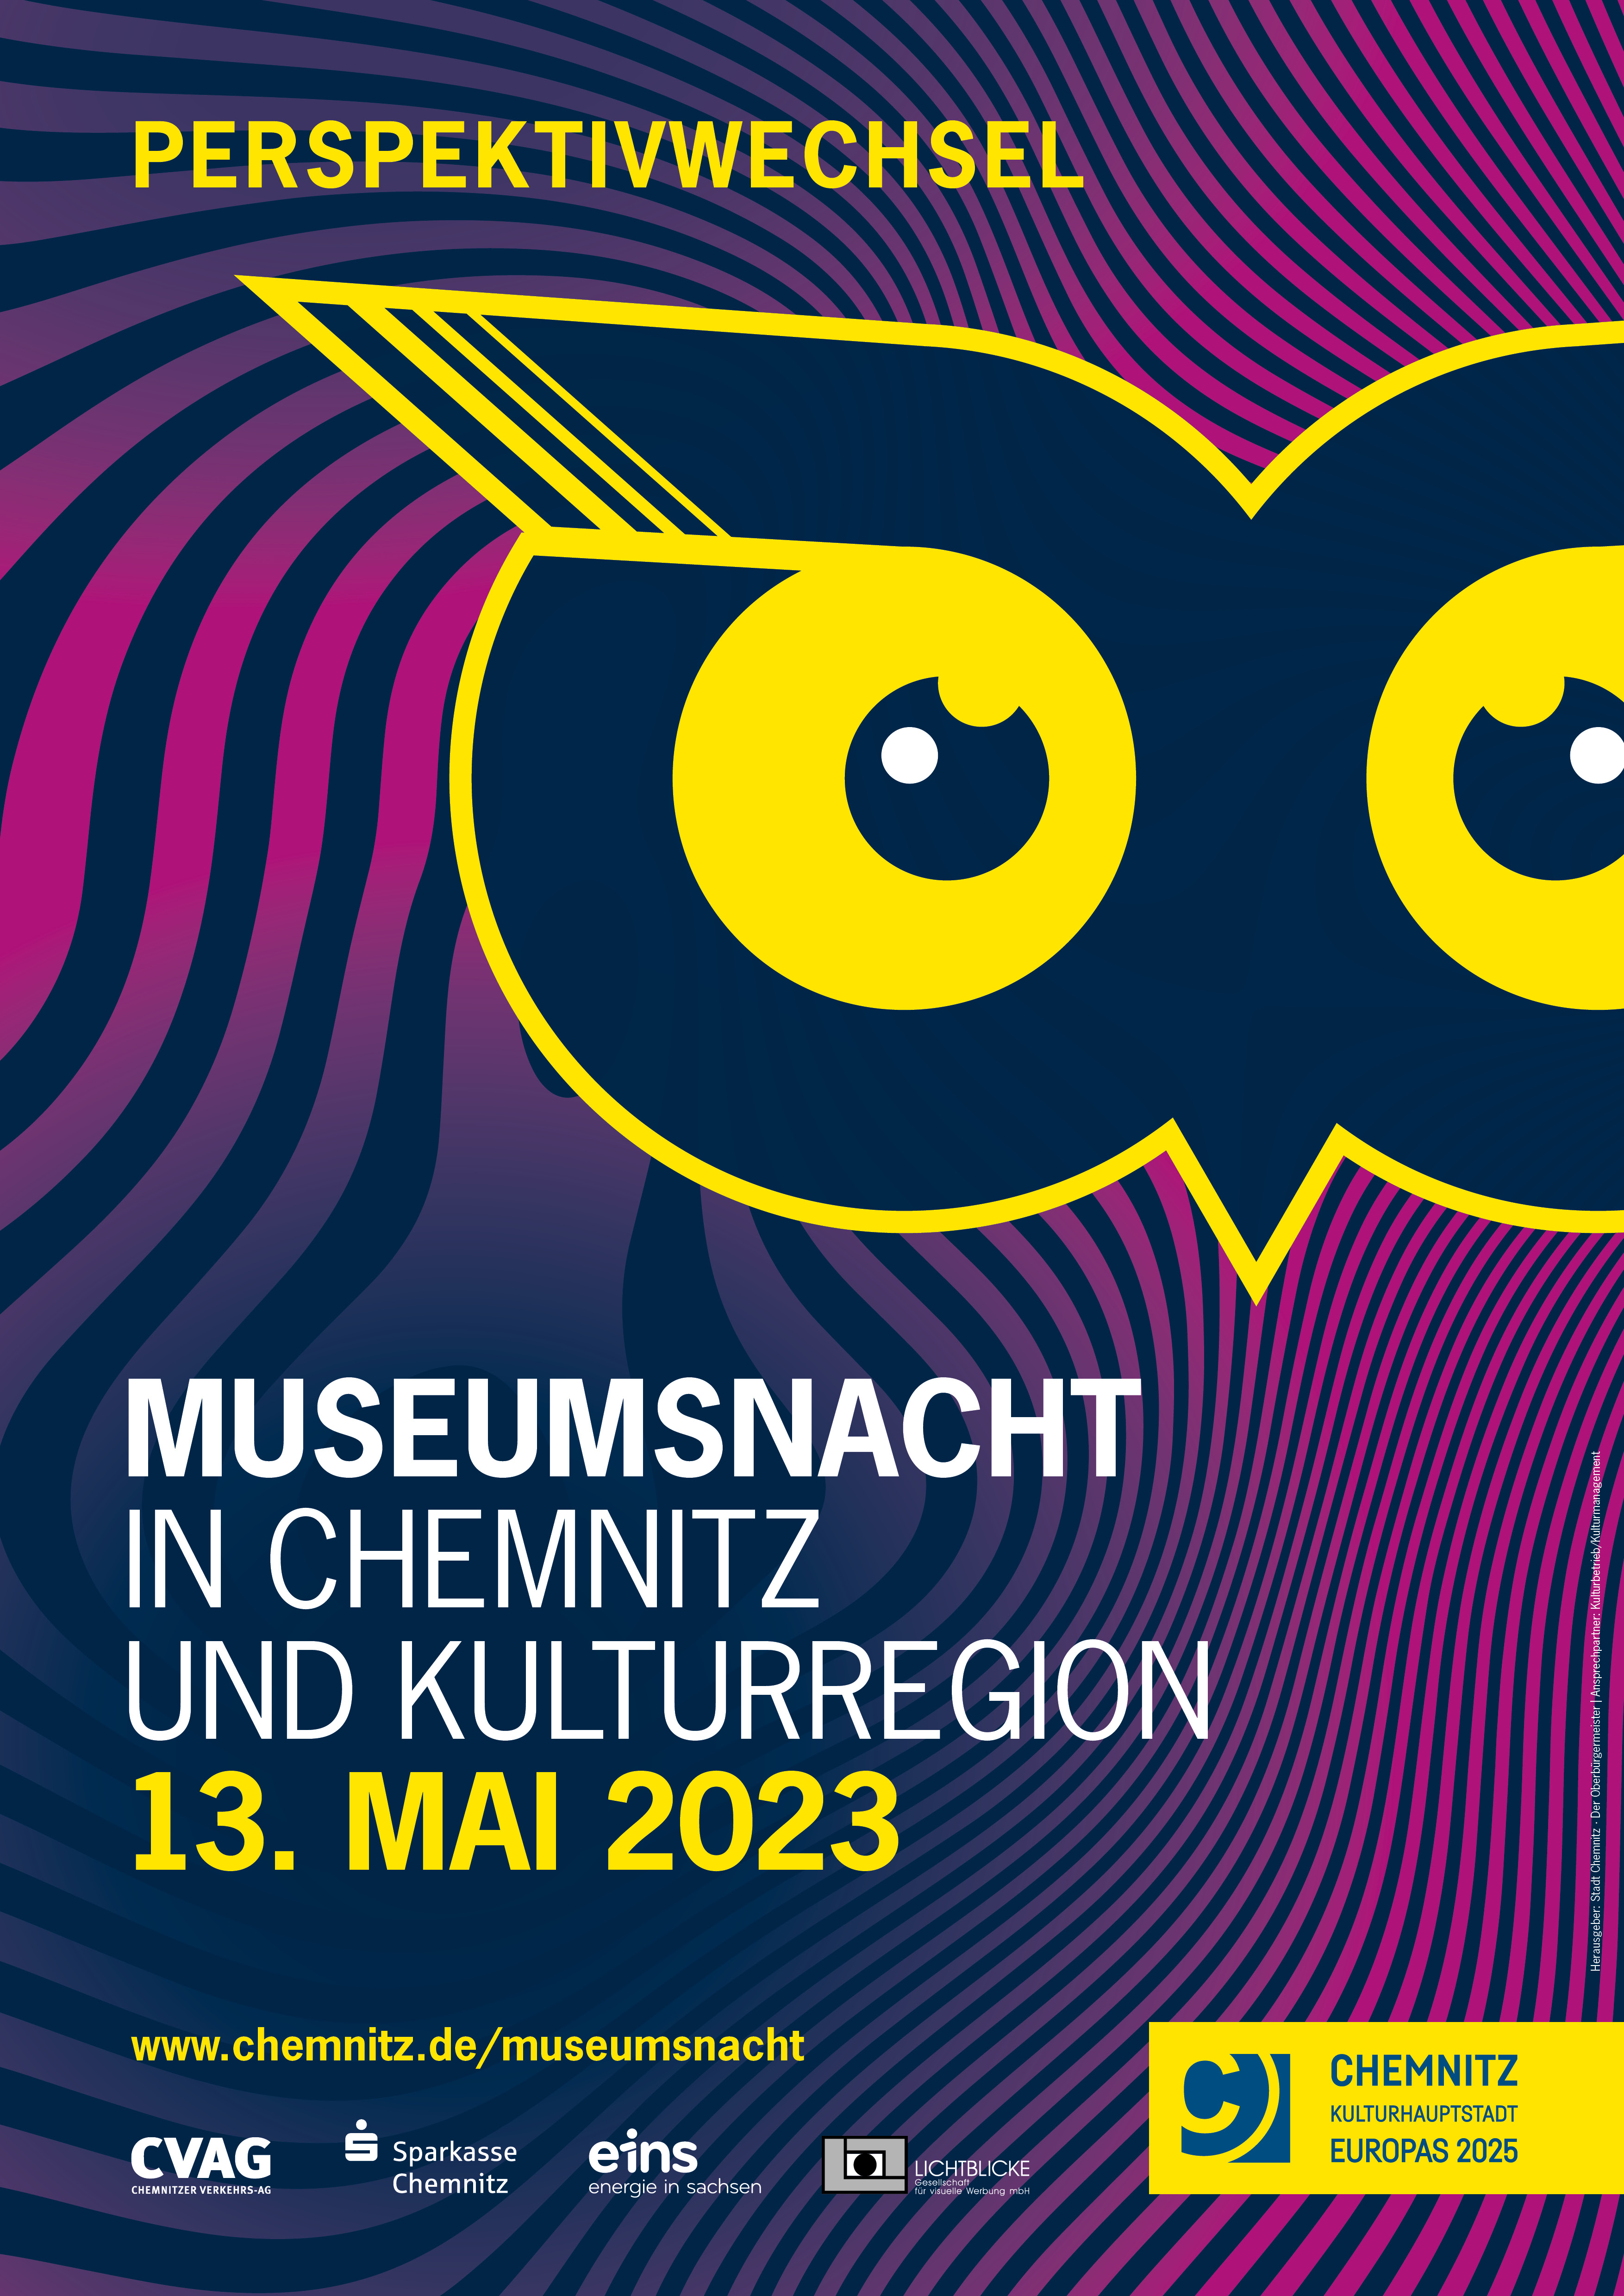 Plakat zur Museumsnacht 2023 in Chemnitz und der Kulturregion